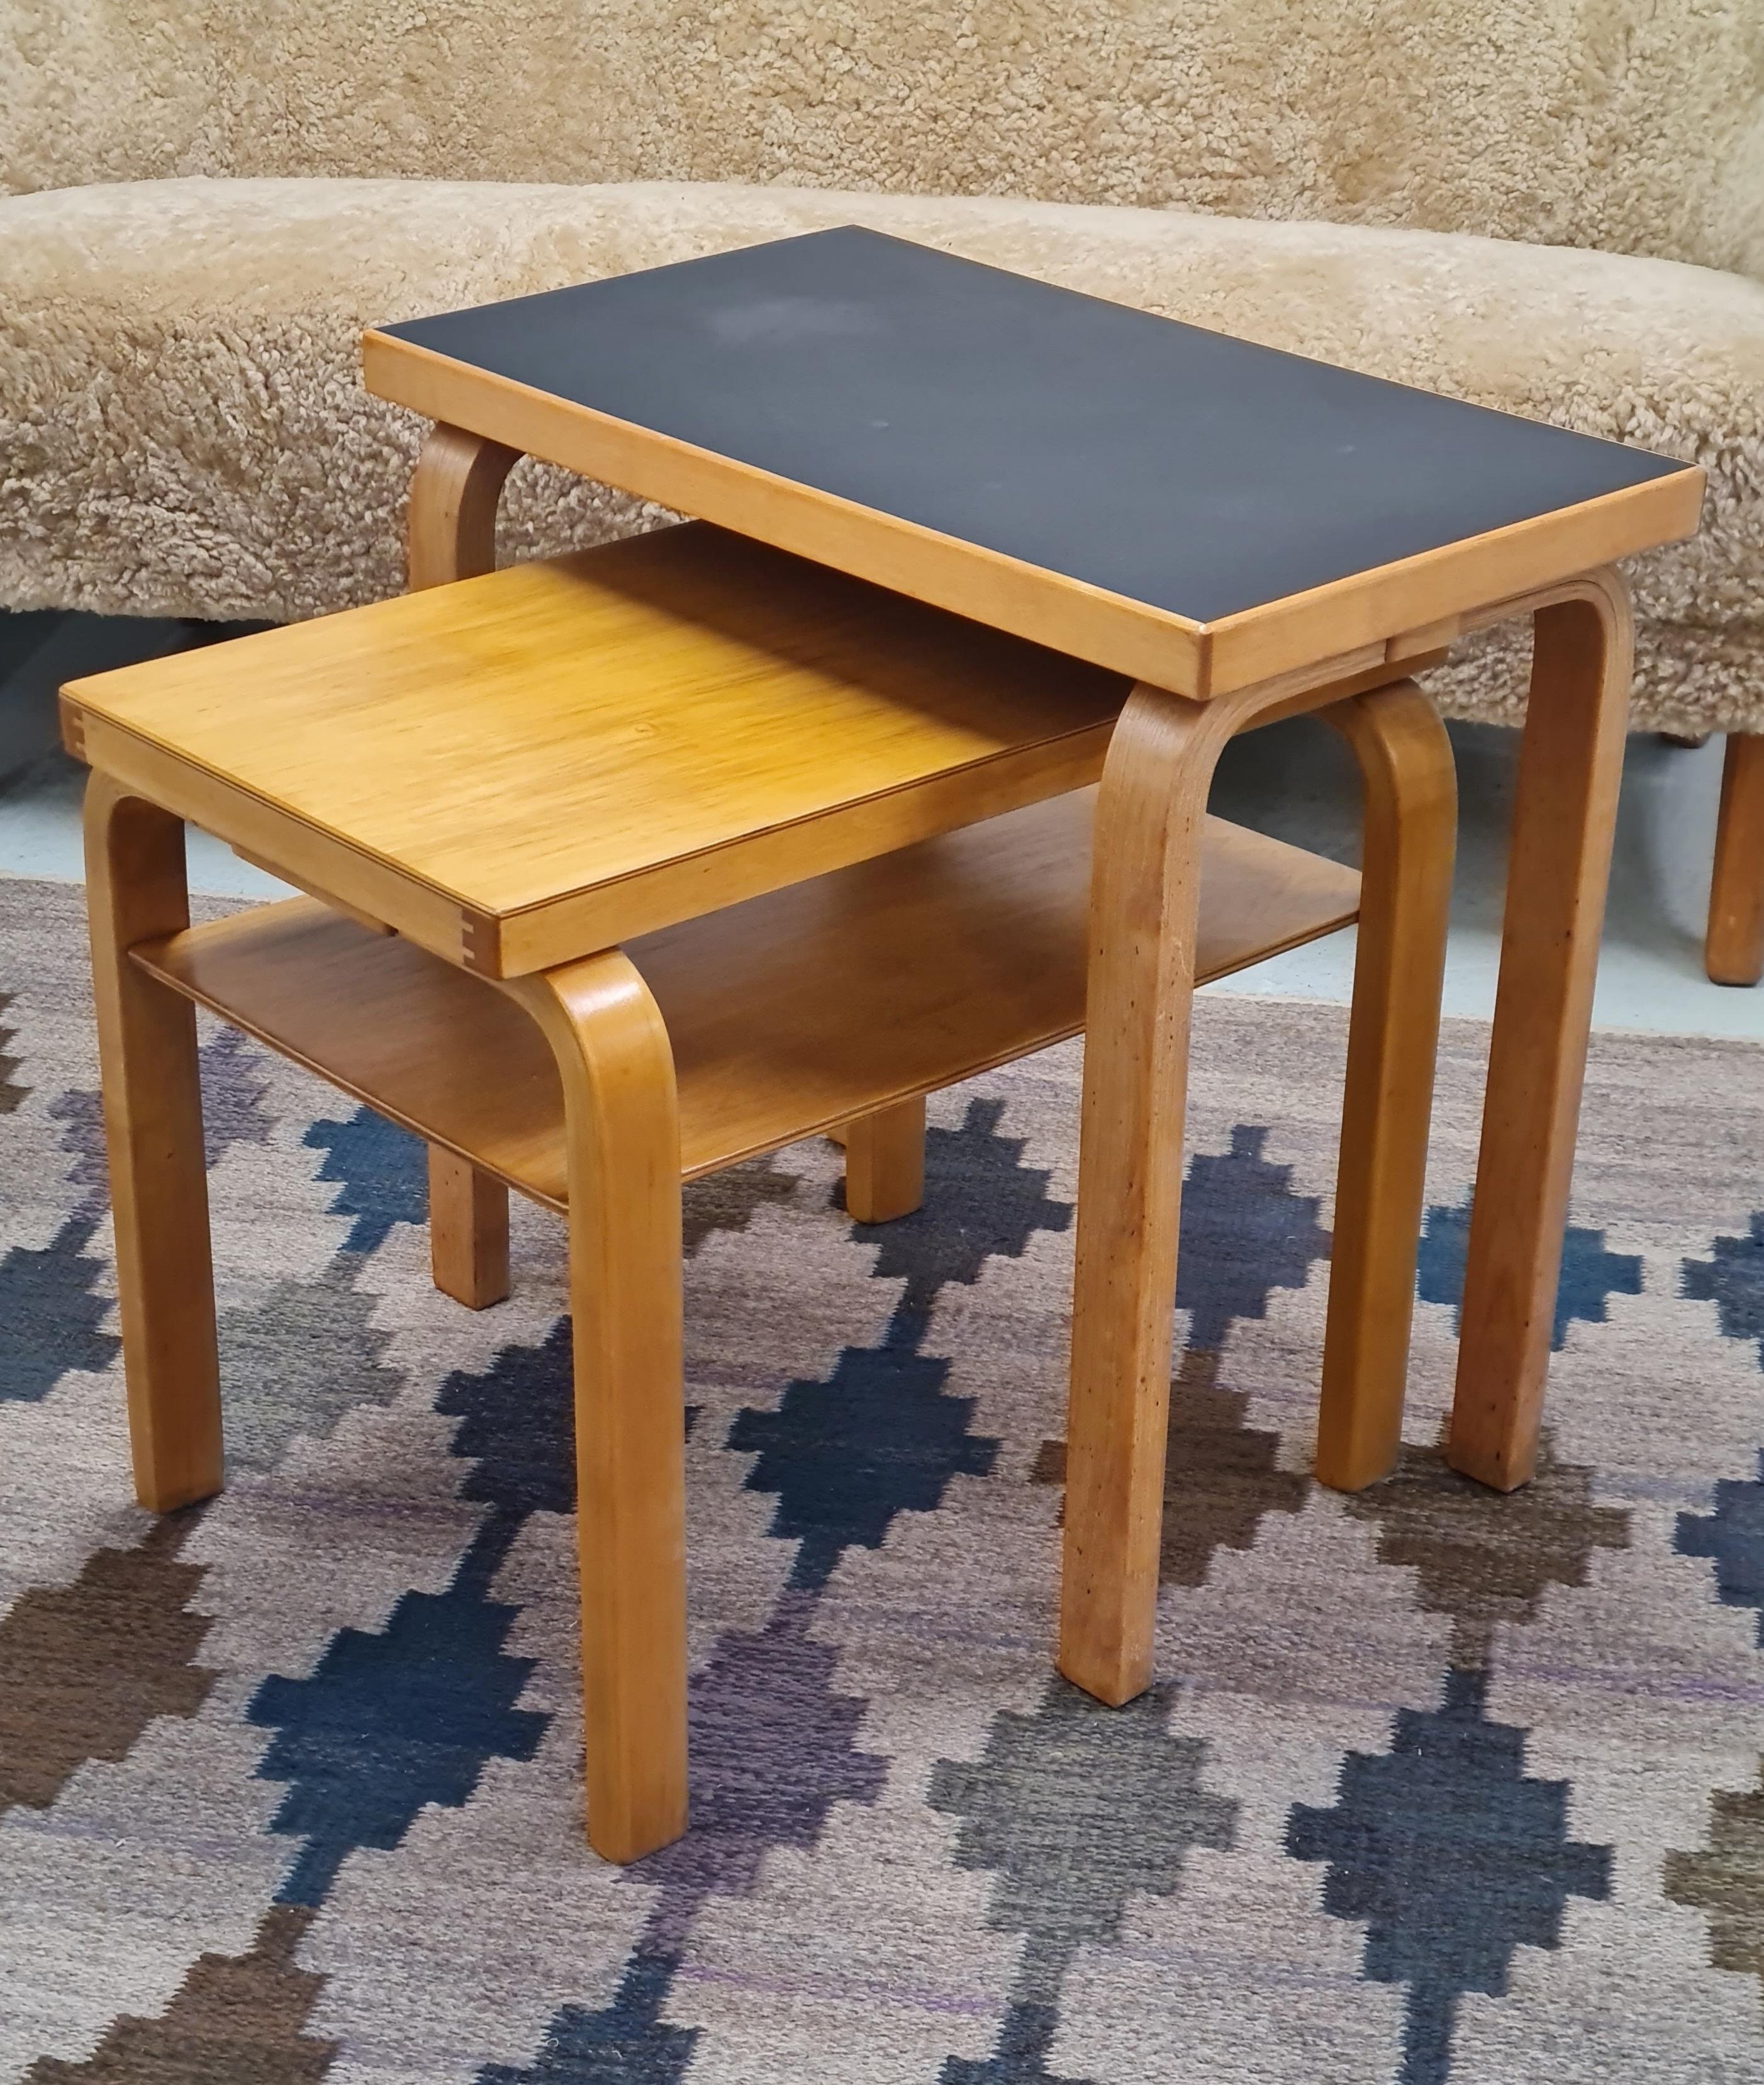 Alvar aalto Side Table Model 86 for Artek, 1930s For Sale 1